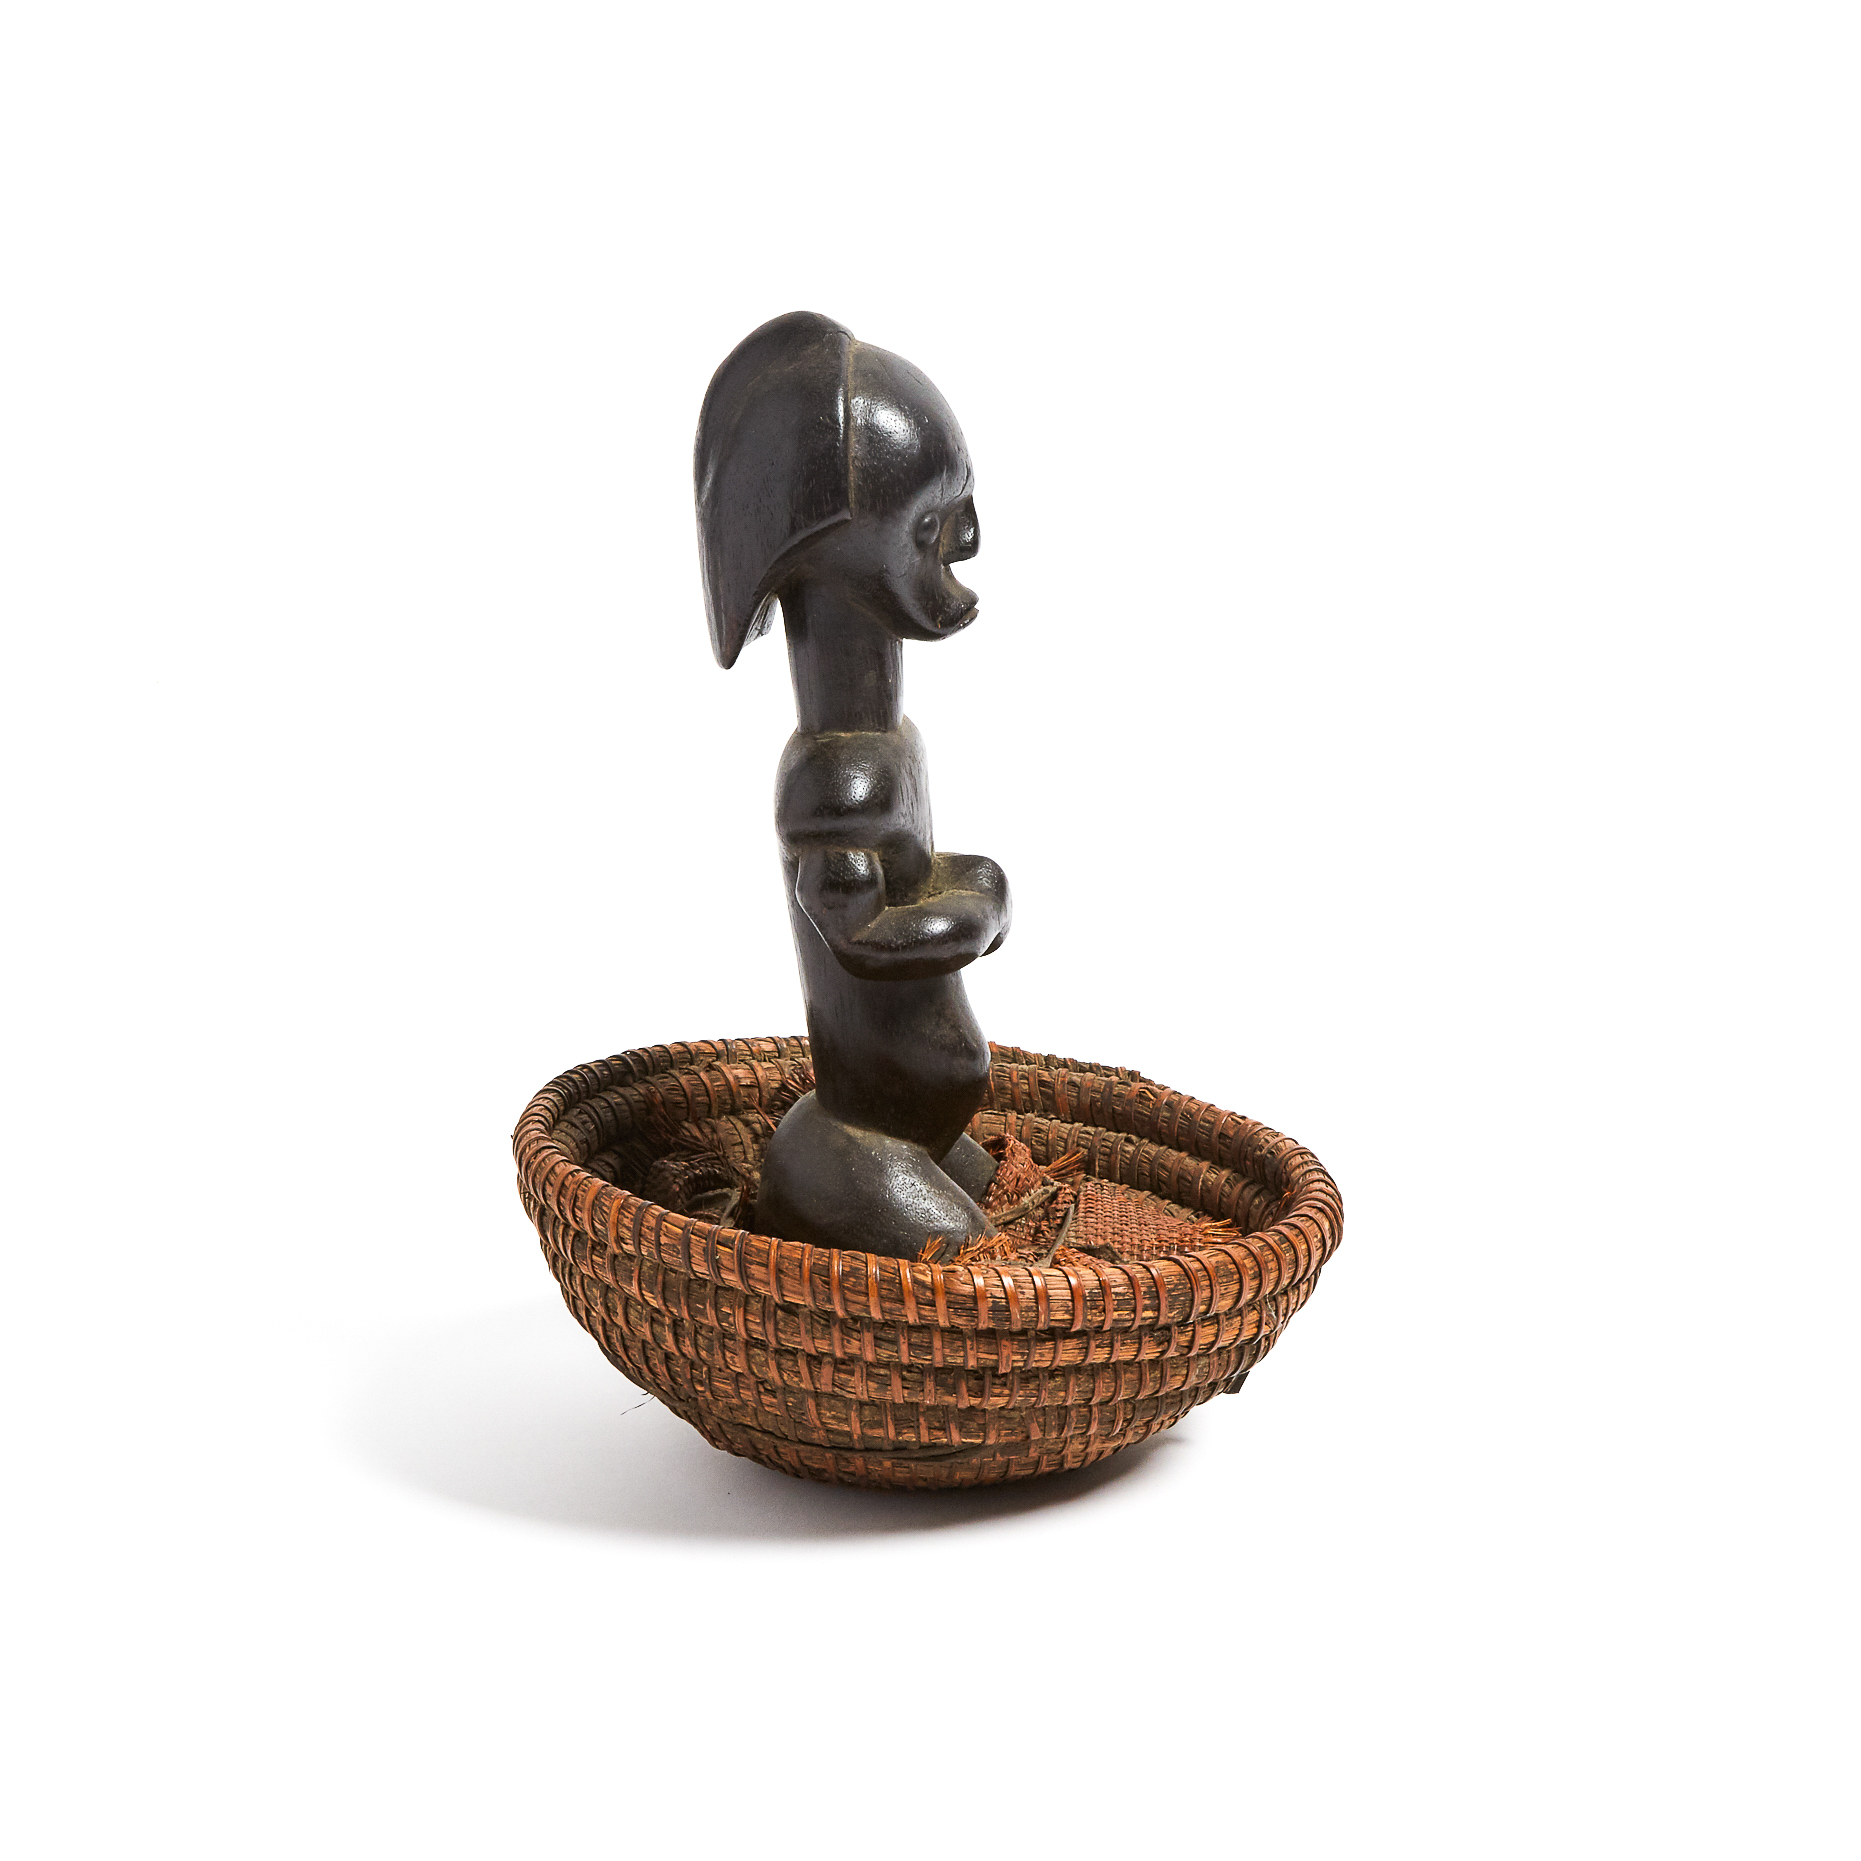 Fang Basket Figure, Central Africa